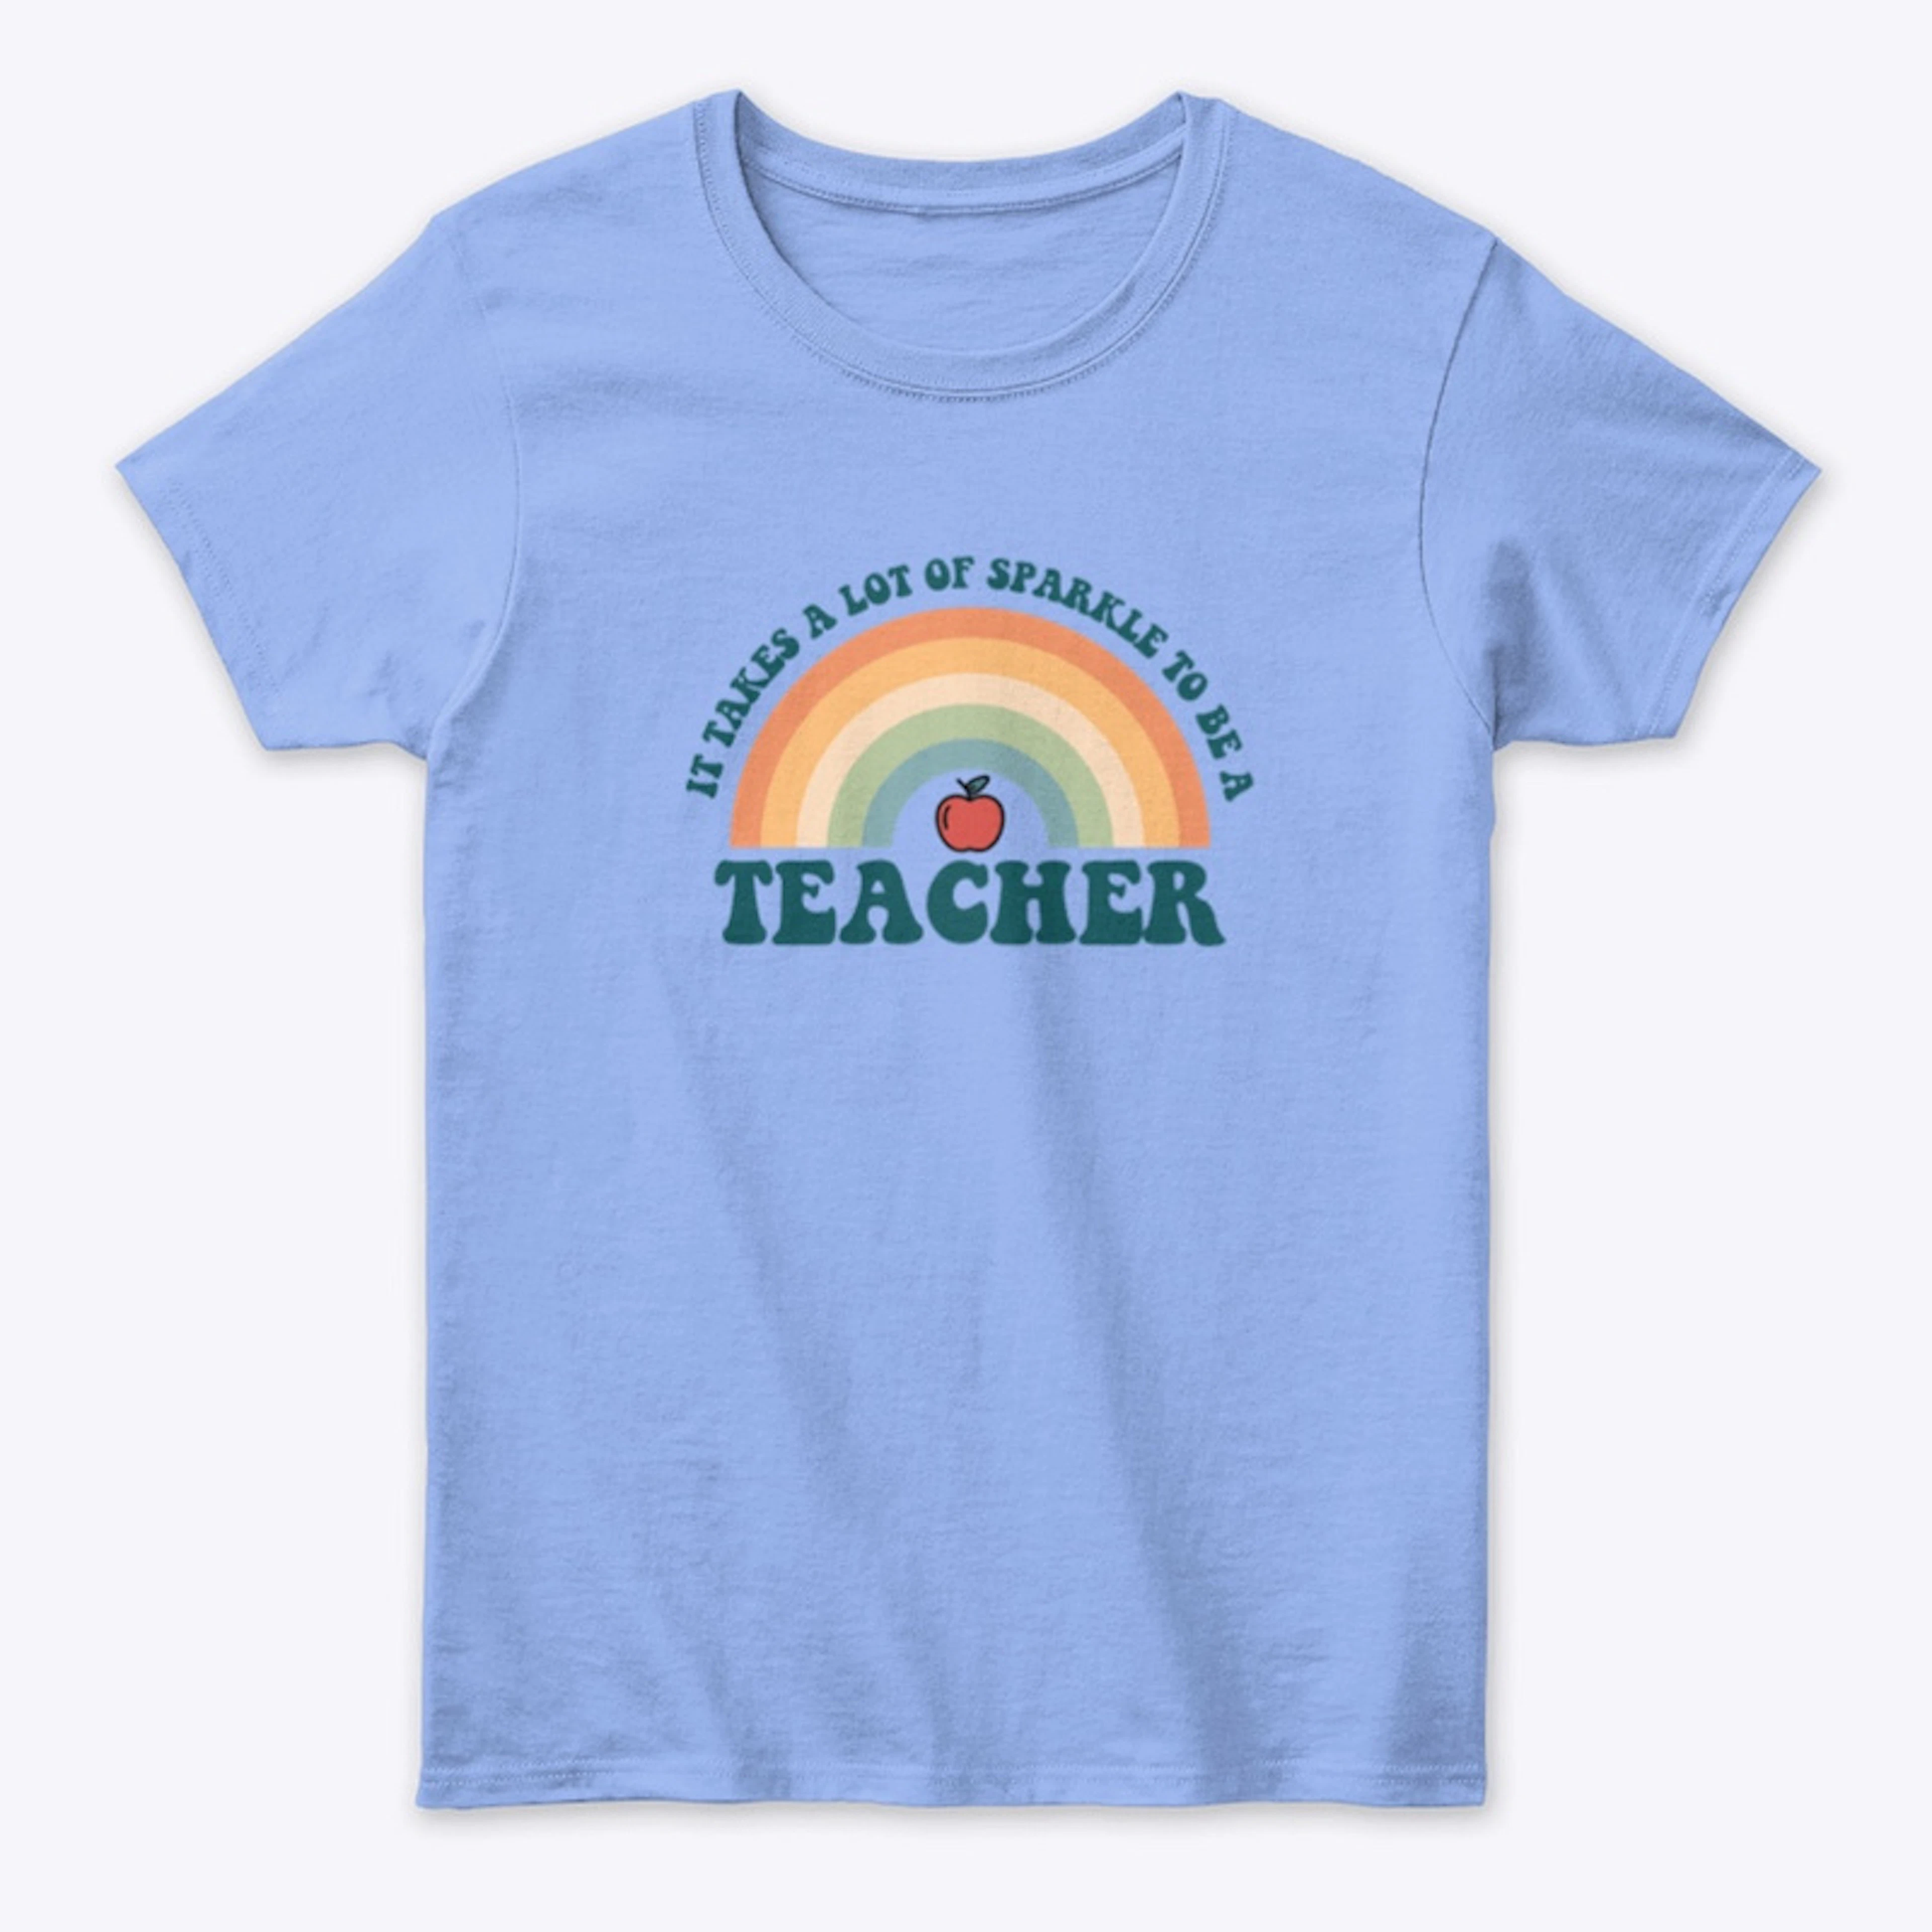 Teachers Sparkle!